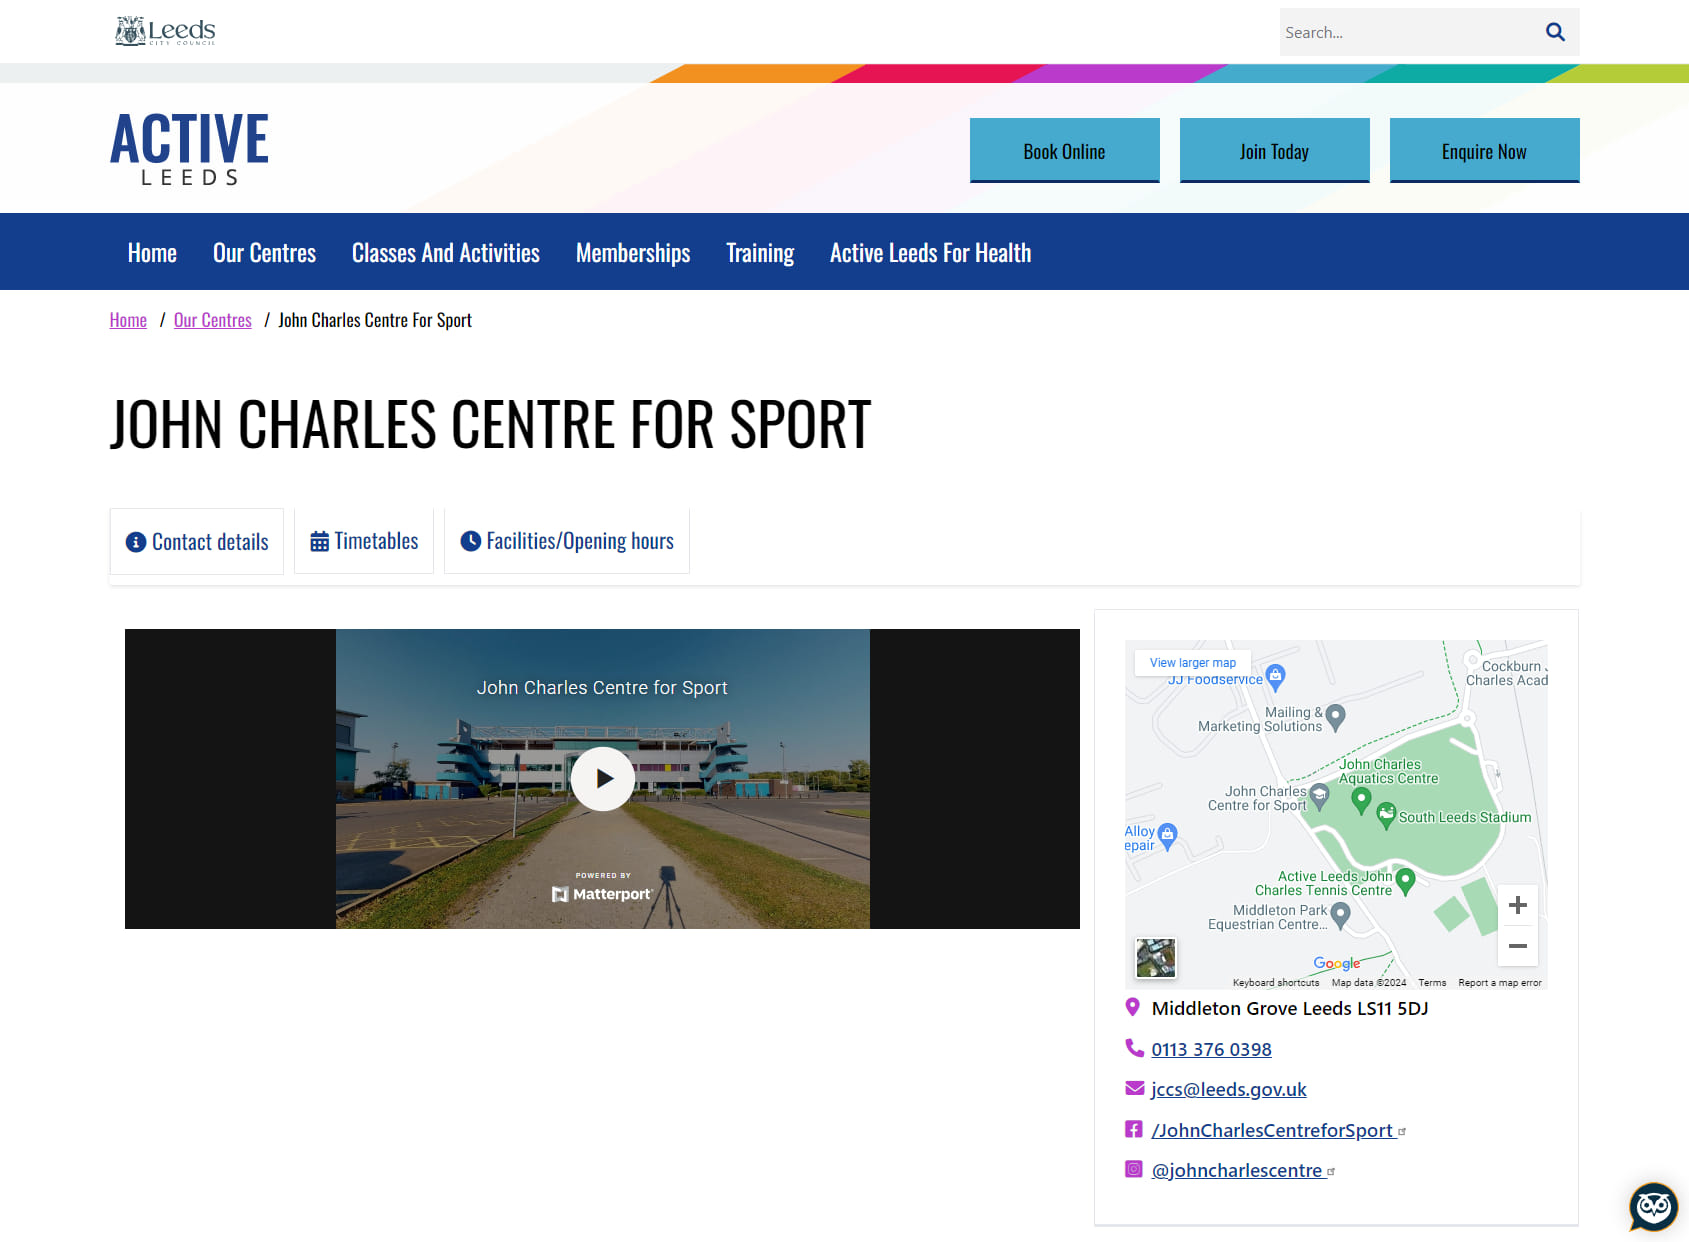 John Charles Centre for Sport